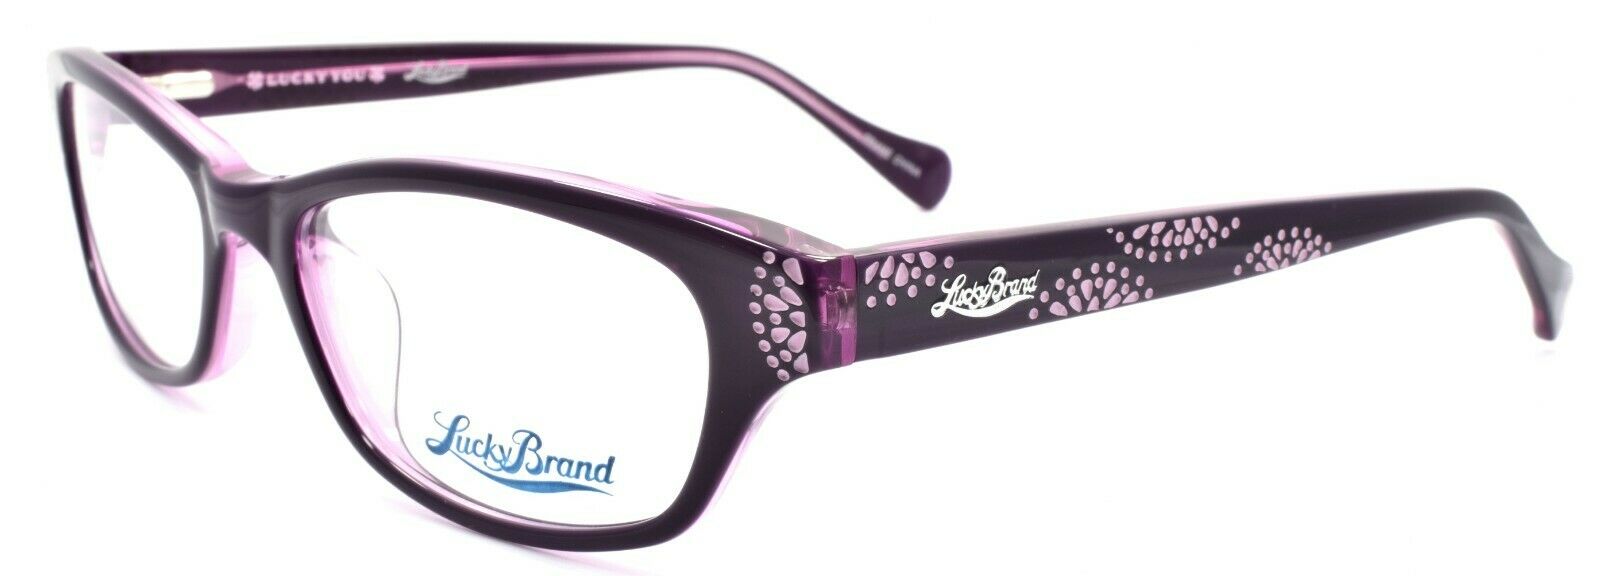 1-LUCKY BRAND Swirl Women's Eyeglasses Frames 53-17-135 Purple + CASE-751286267907-IKSpecs